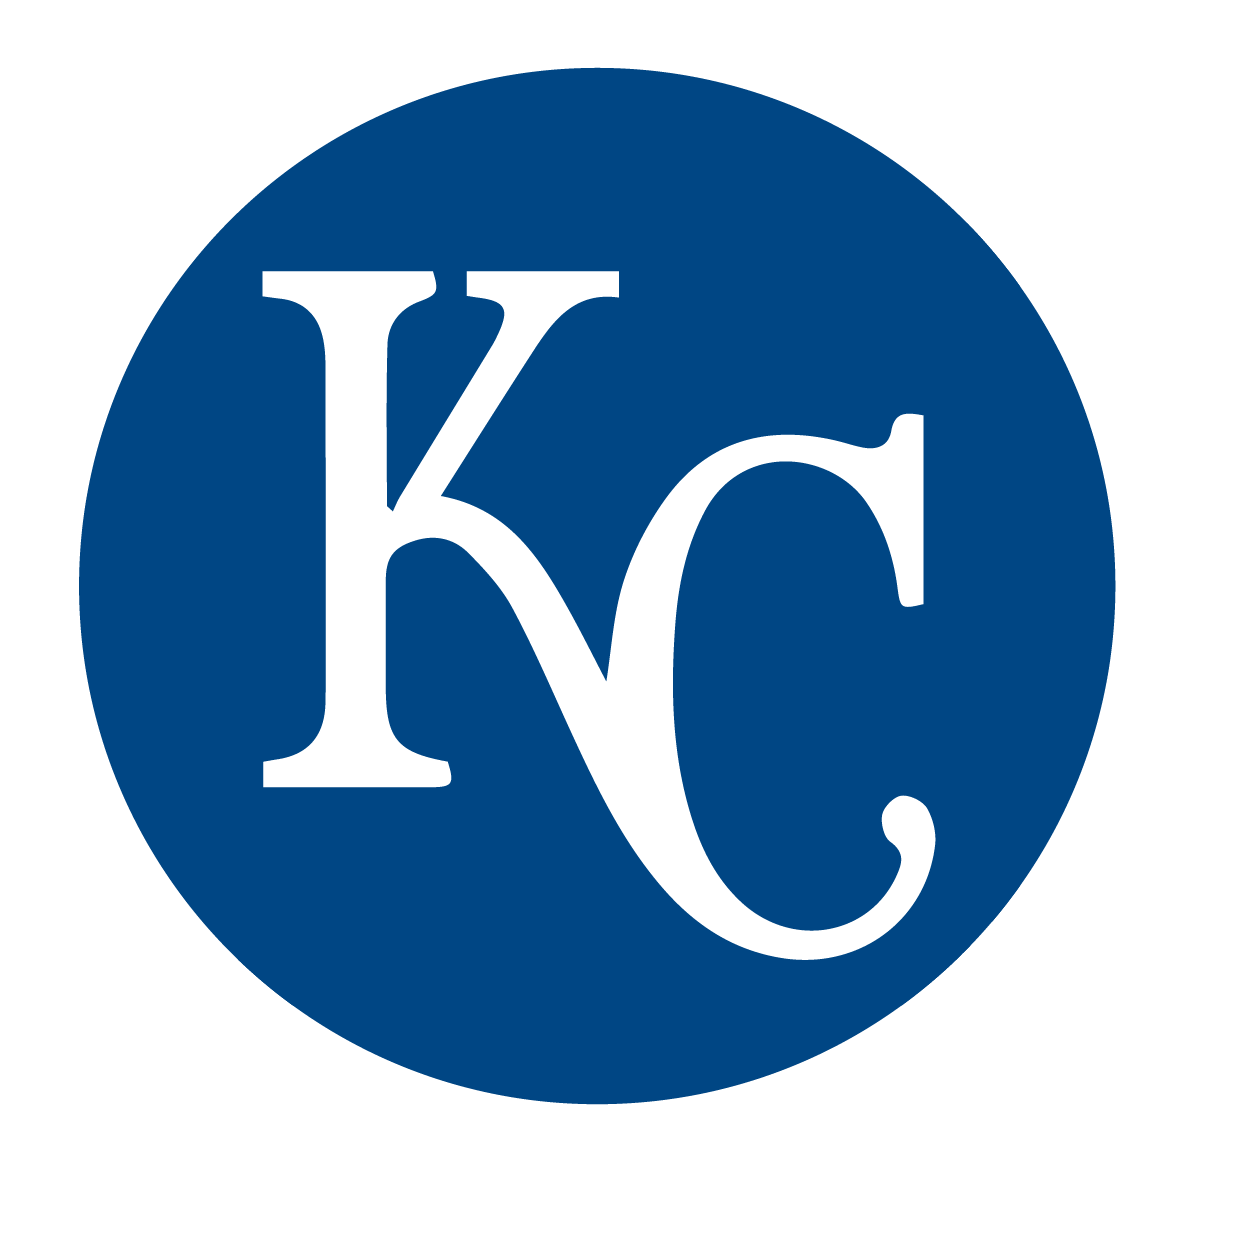 Kansas City Royals graphical representation